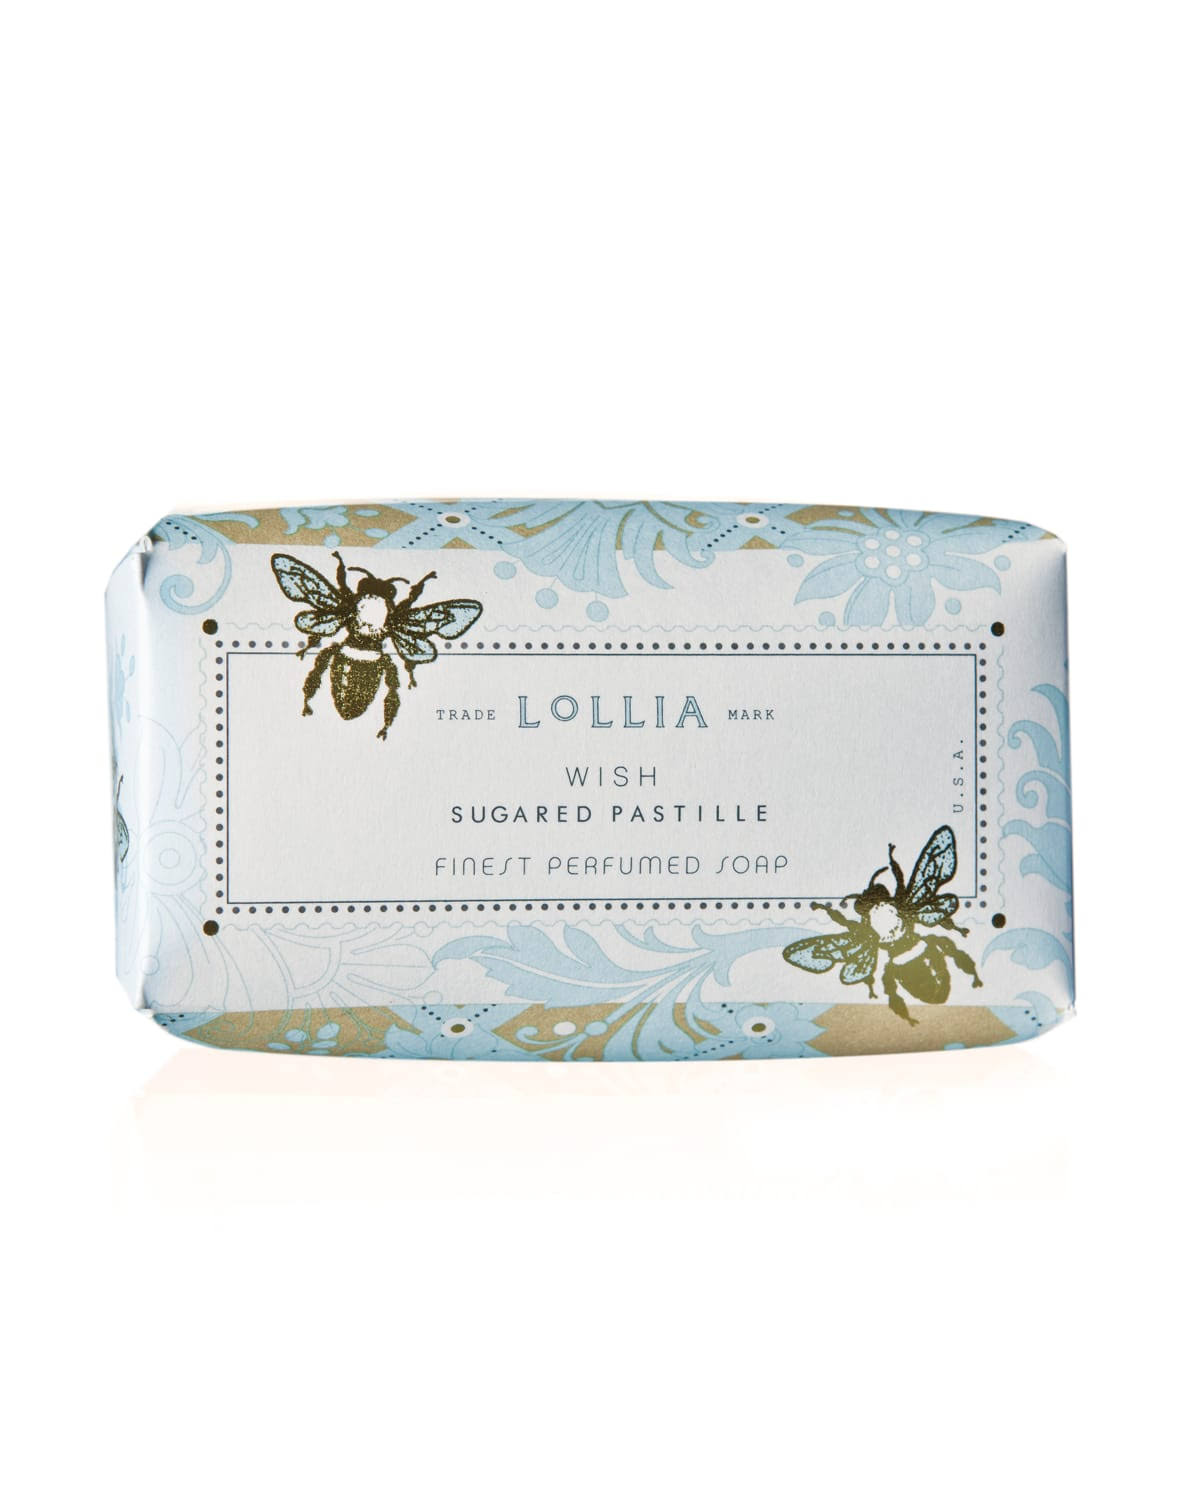 Lollia Wish Boxed Soap - 5.2oz